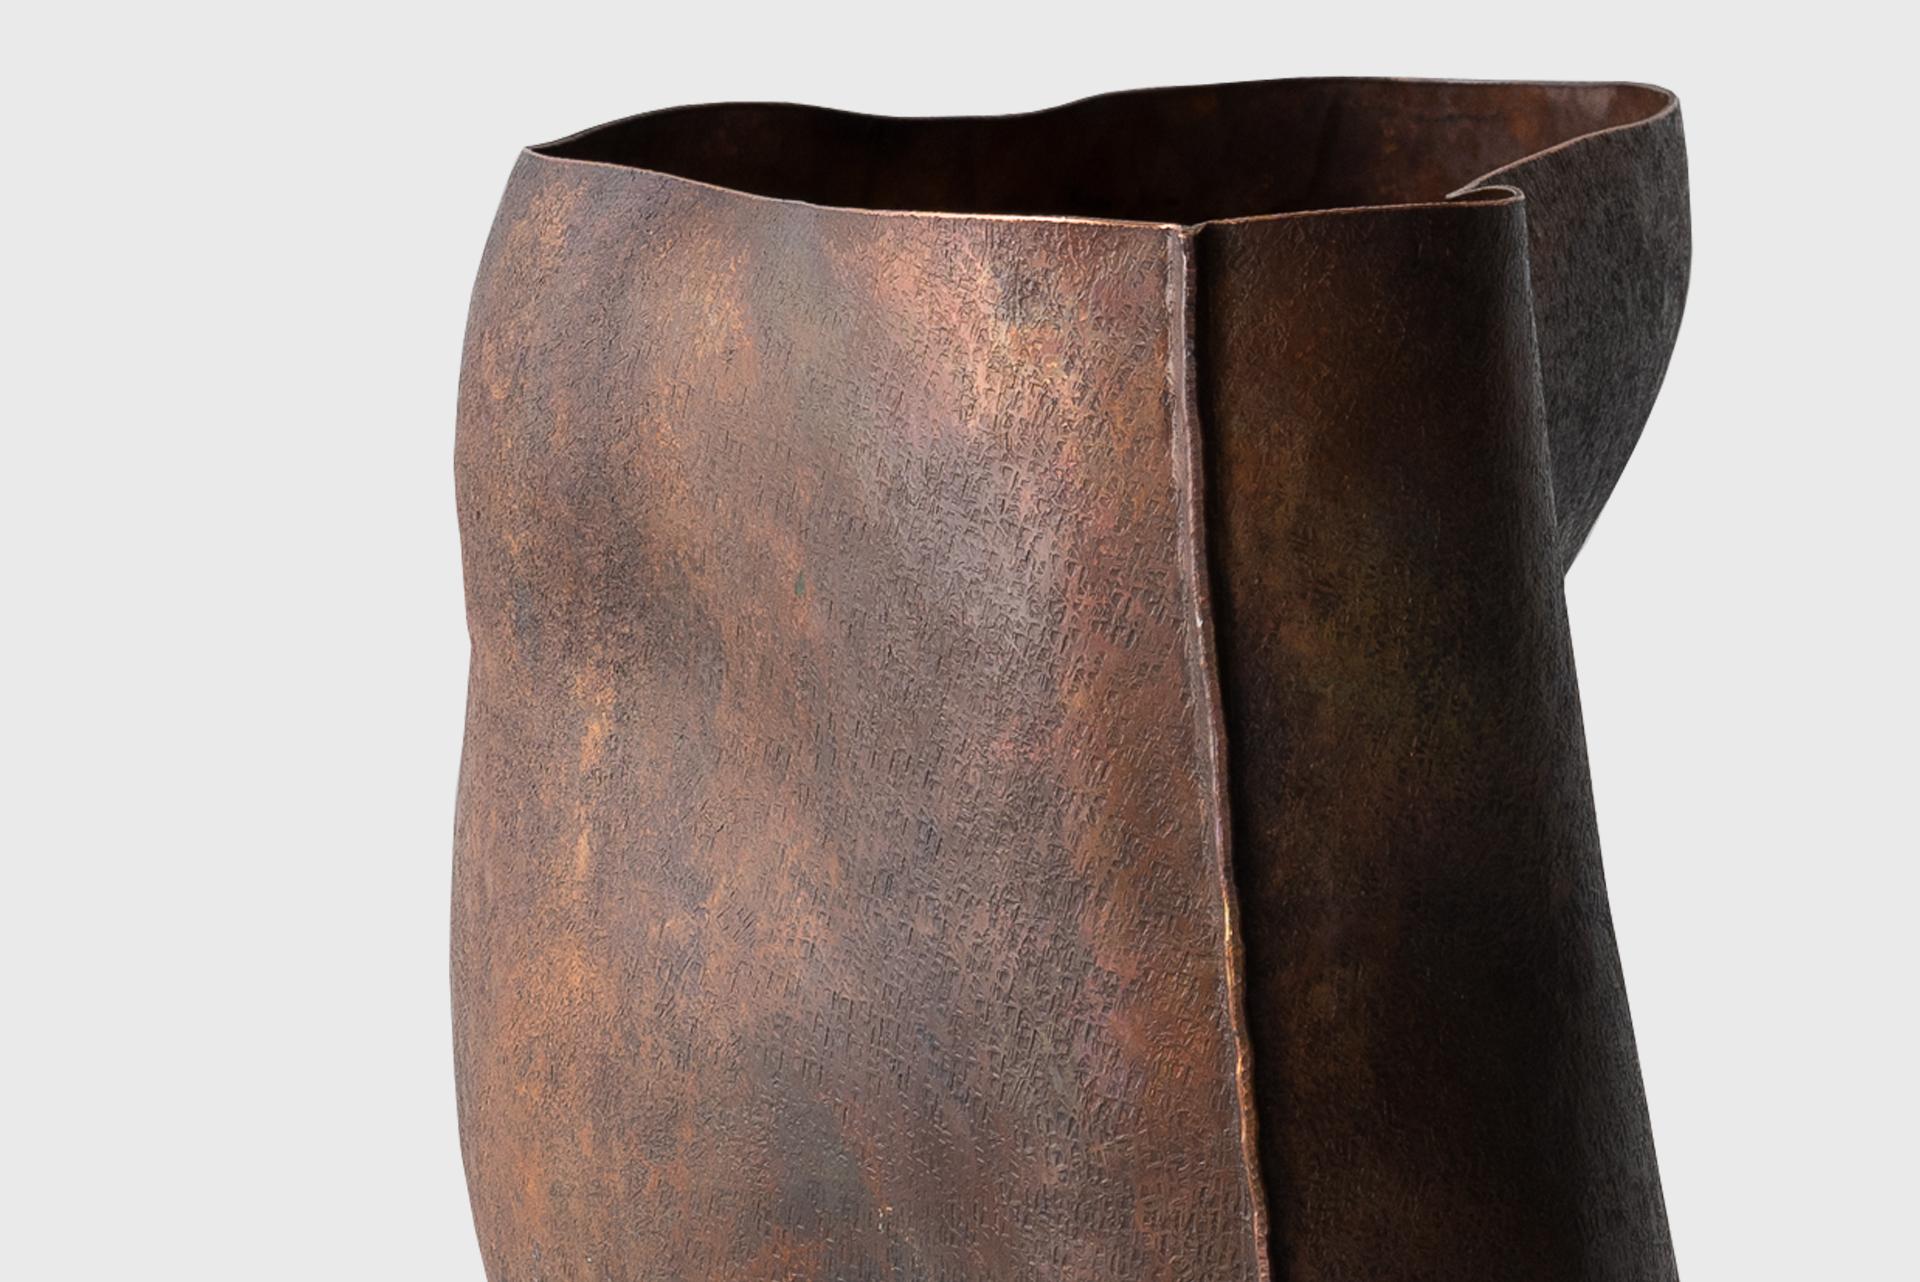 Contemporary Copper Vase 2, Textured Natural Dark Lacquer, Seung Hyun Lee, Korea For Sale 4